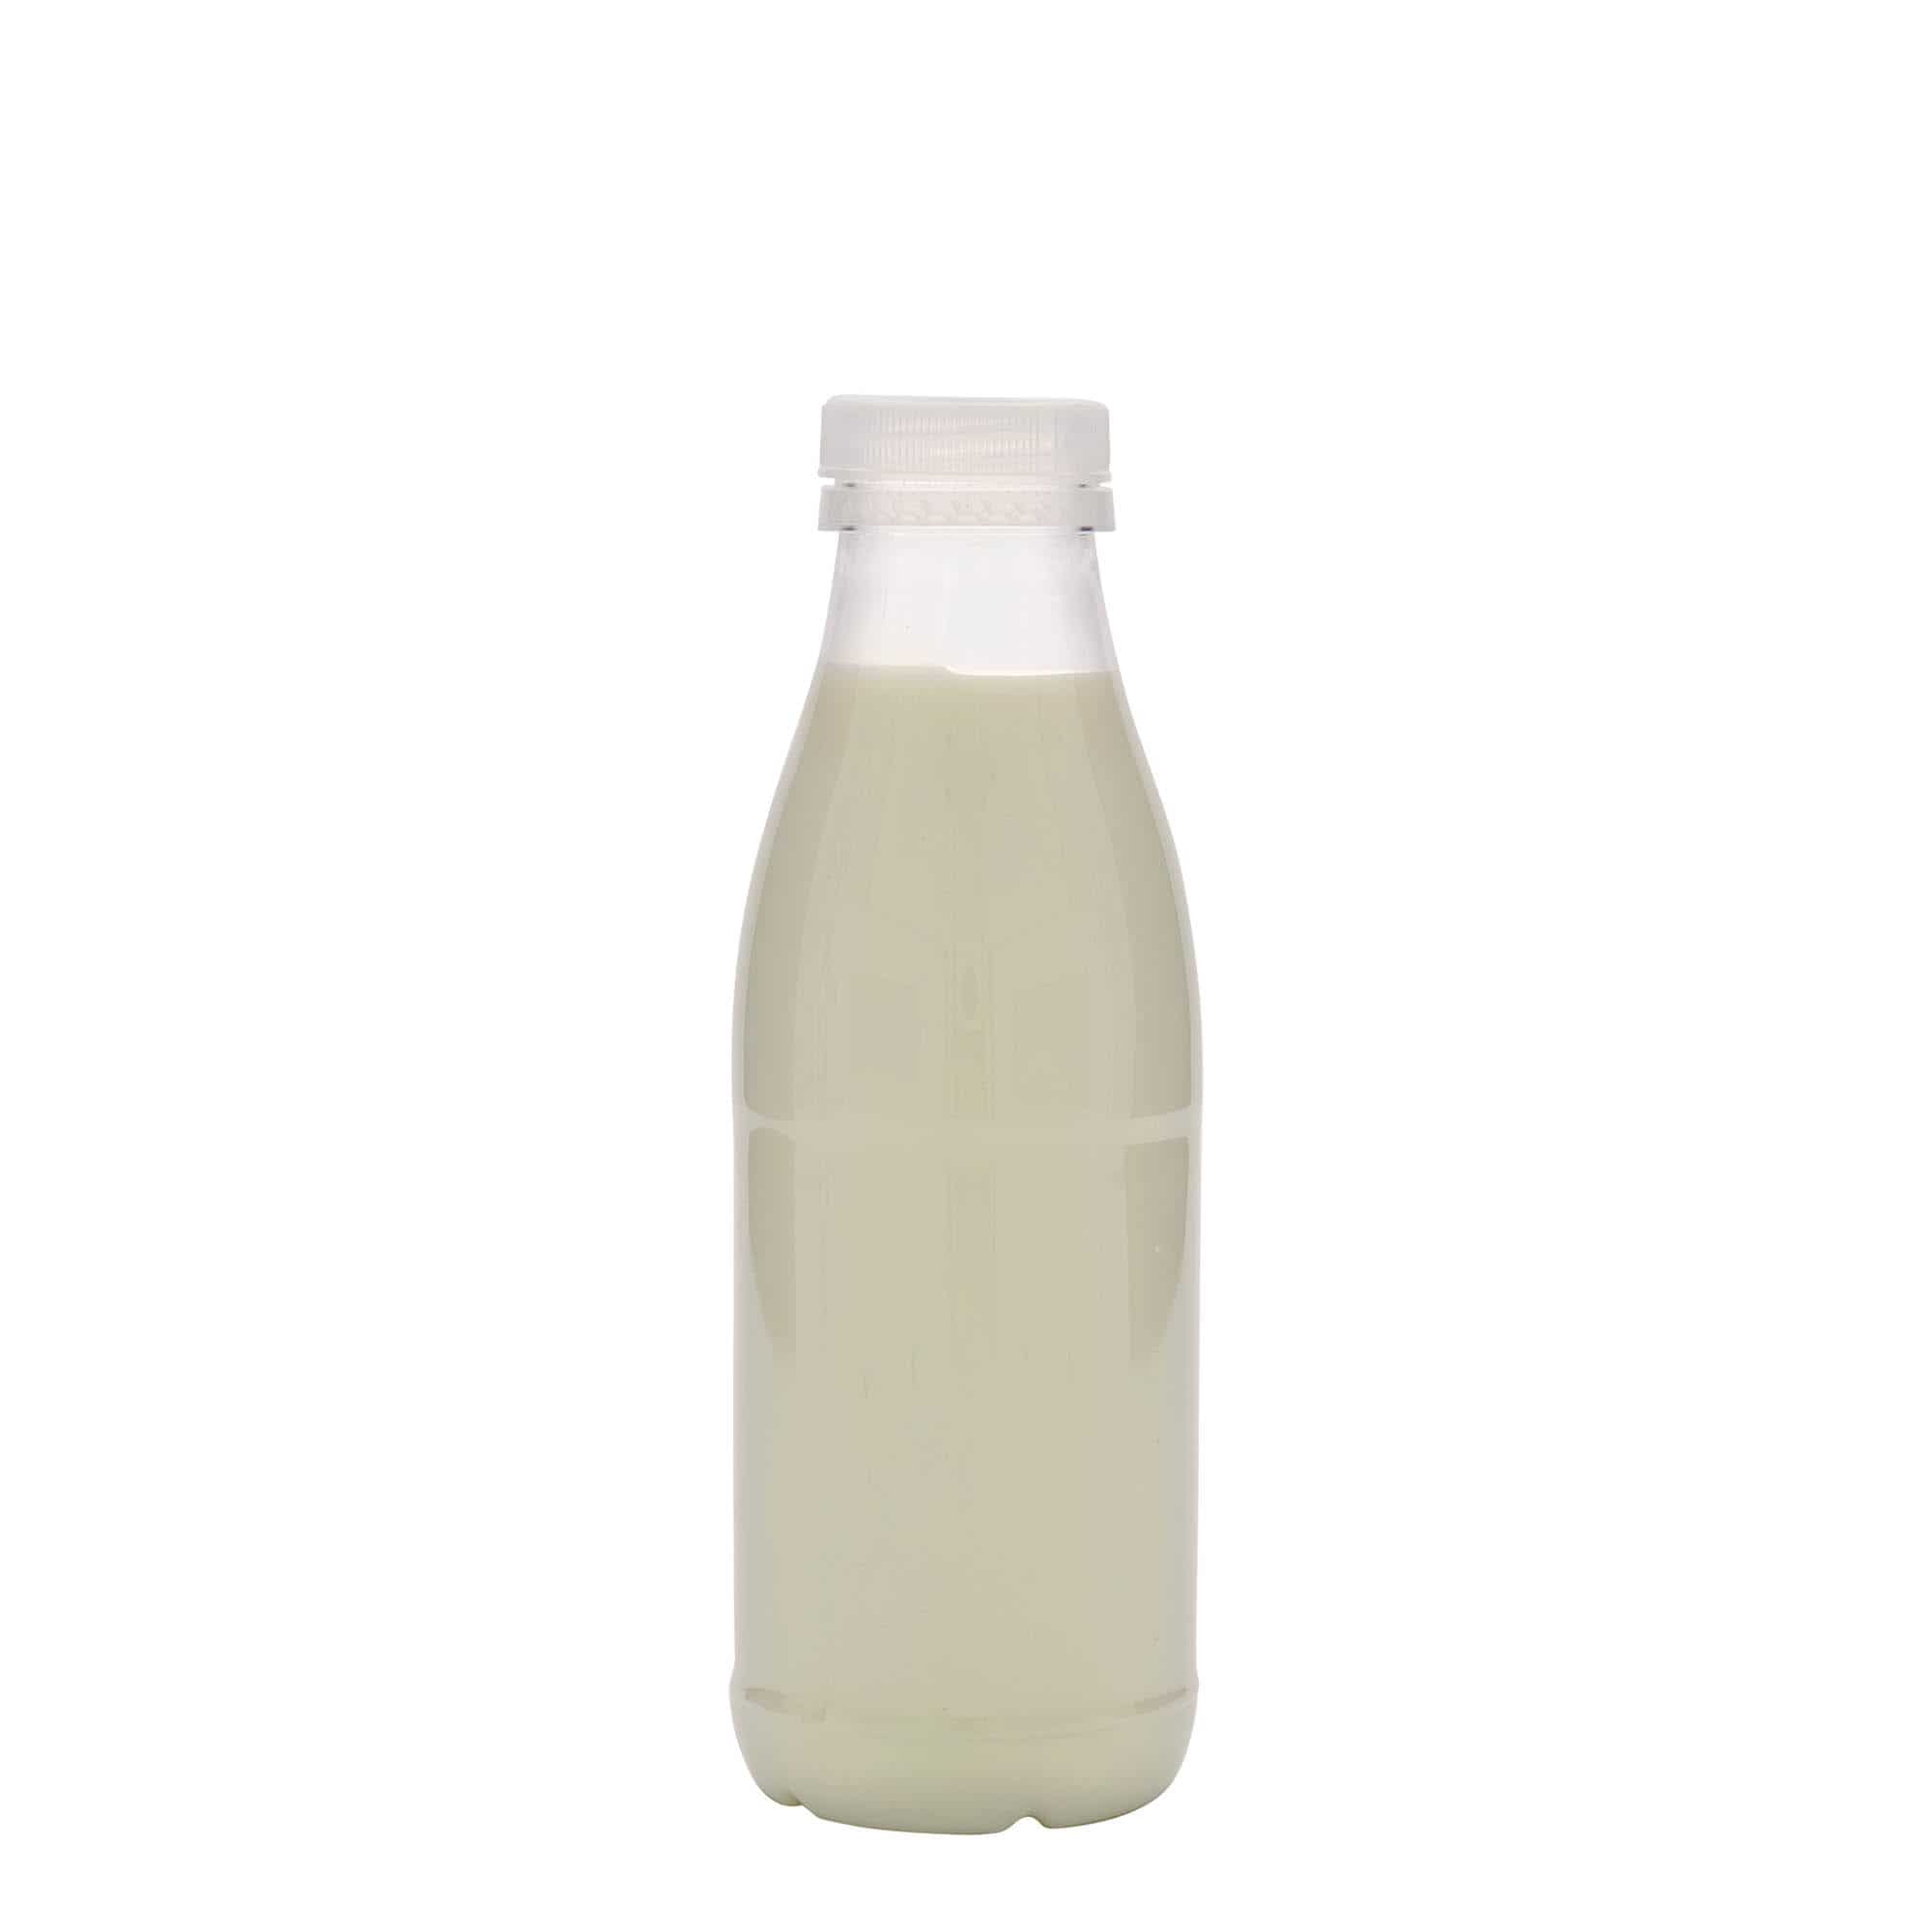 500 ml PET bottle 'Milk and Juice', plastic, closure: 38 mm